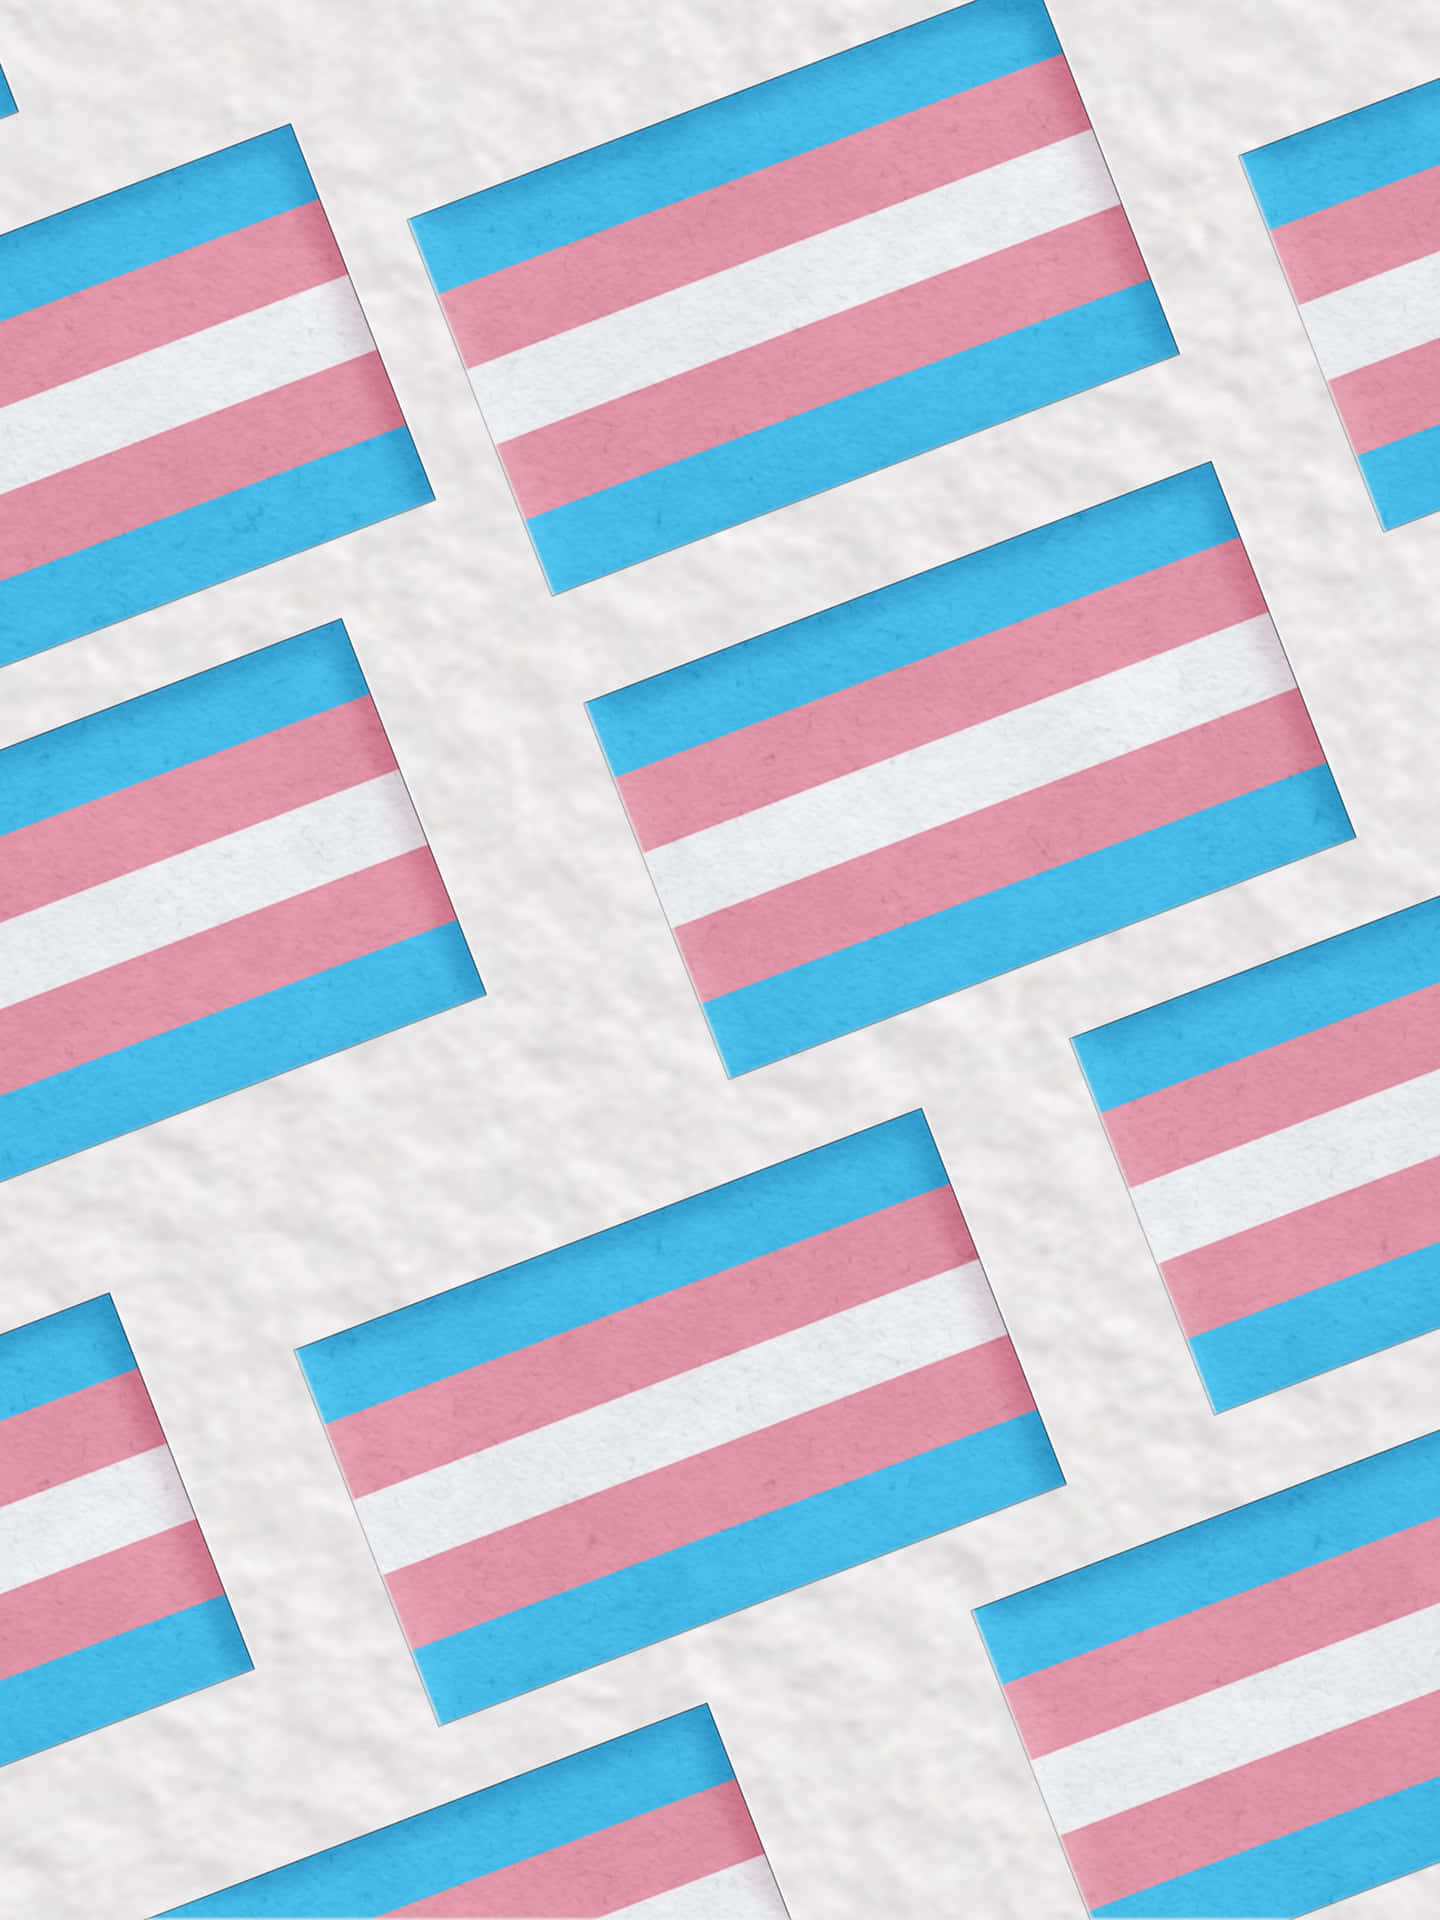 Mostreseu Orgulho E Apoio À Comunidade Transgênero Com A Bandeira Trans. Papel de Parede